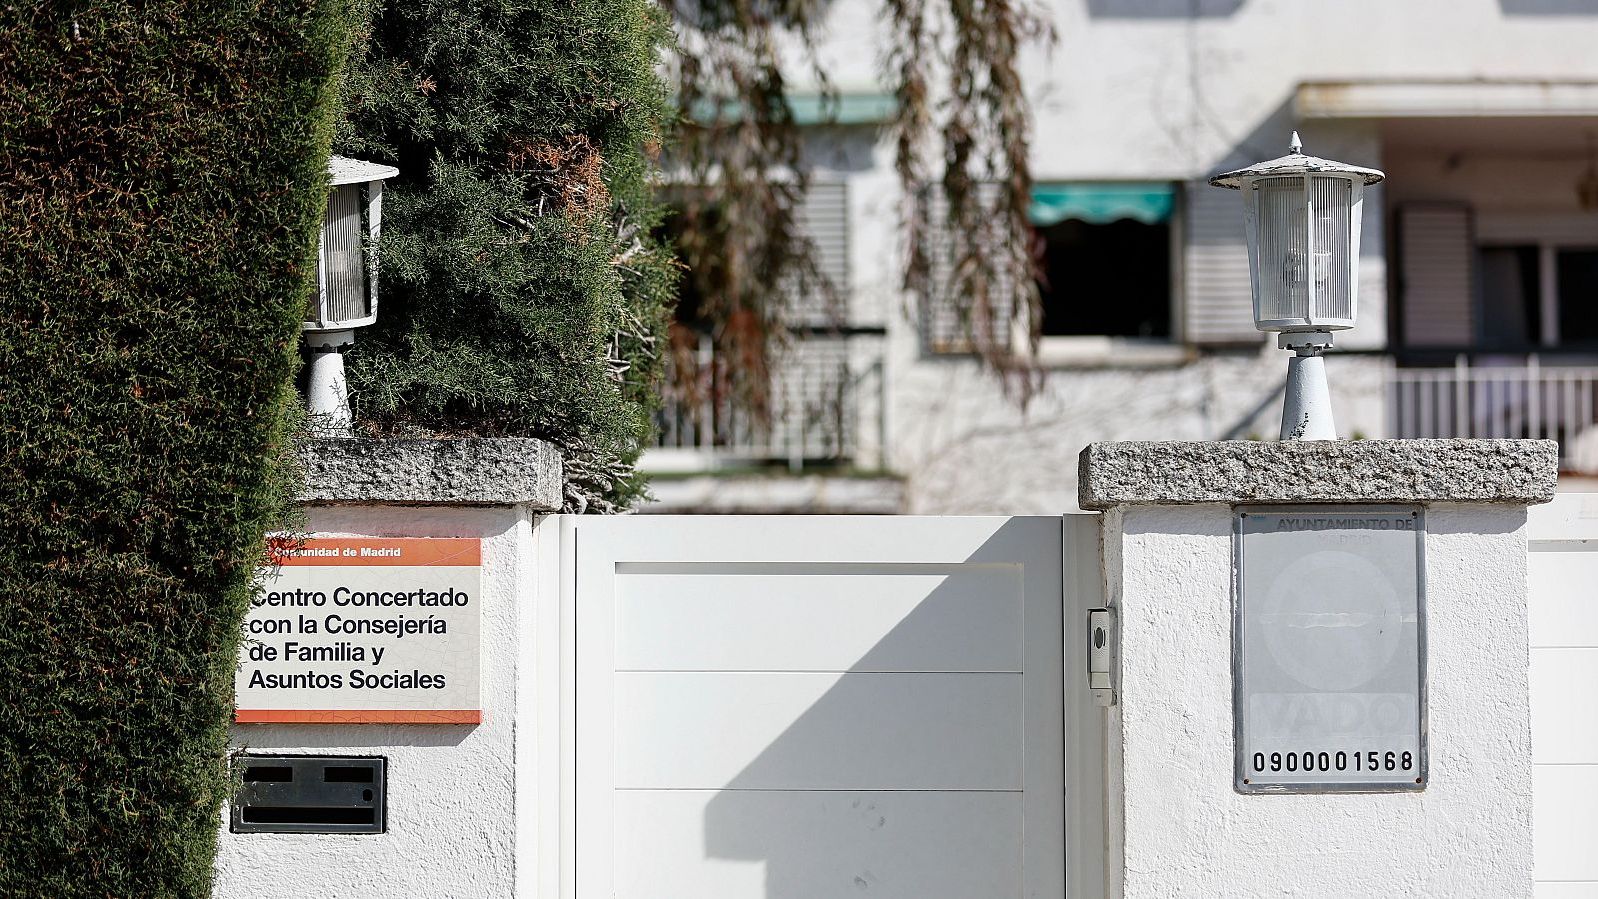 La residencia de mayores de Madrid donde murieron tres mujeres tenía las  salidas de emergencia bloqueadas